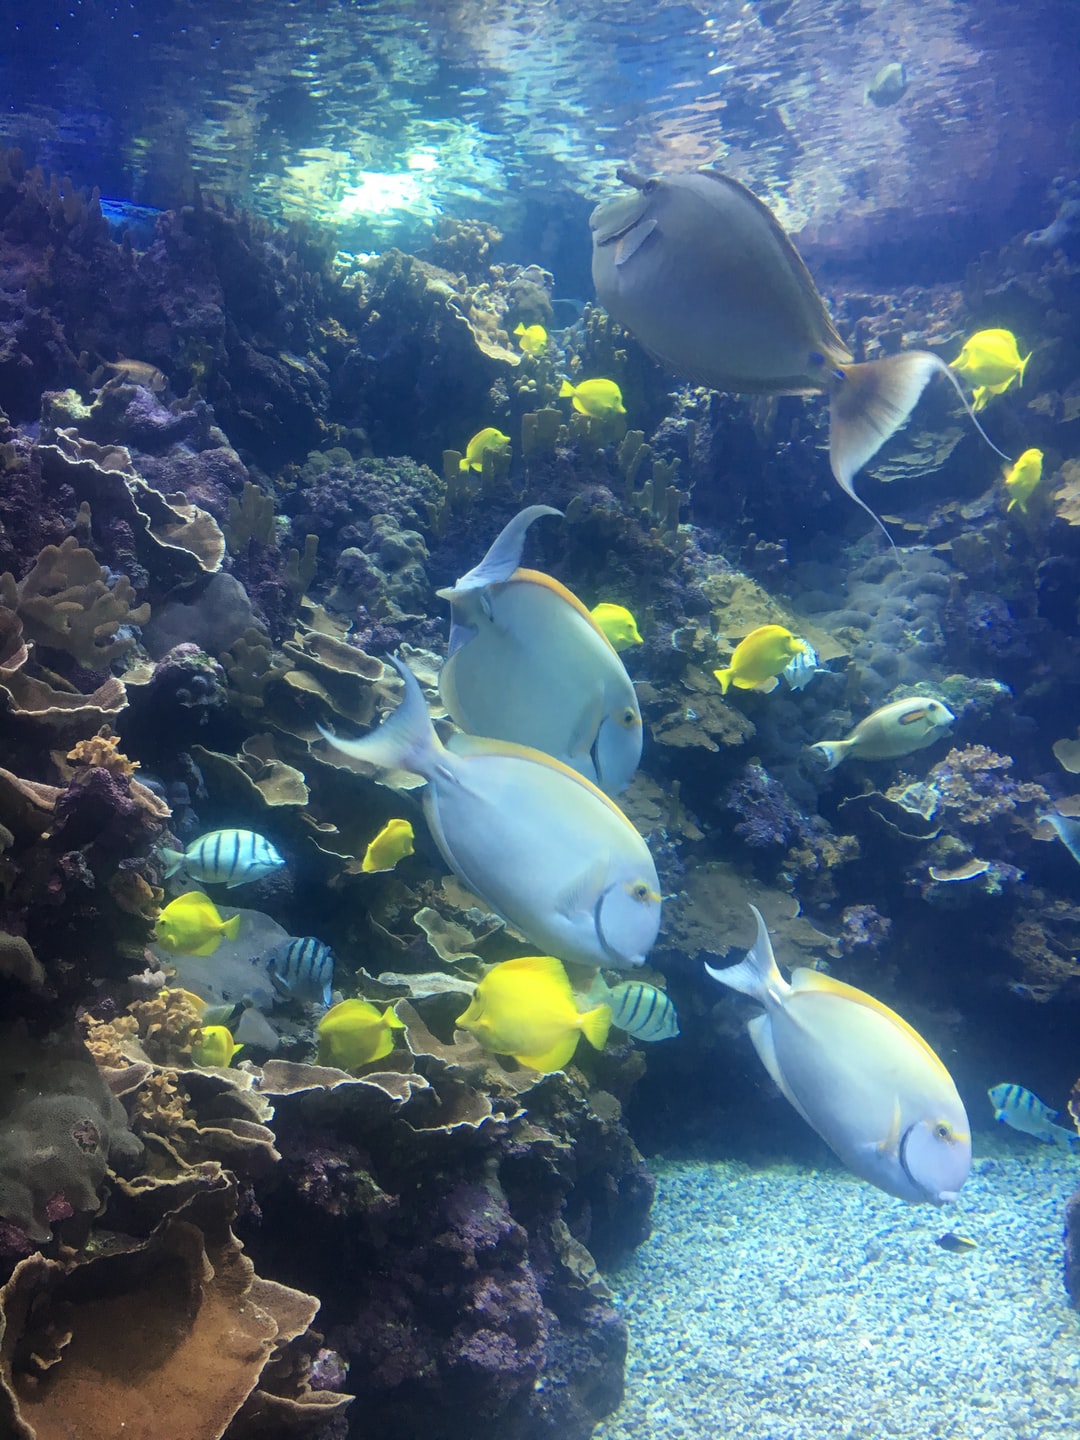 22 wichtige Fragen zu Was Für Deko Darf Ins Aquarium?